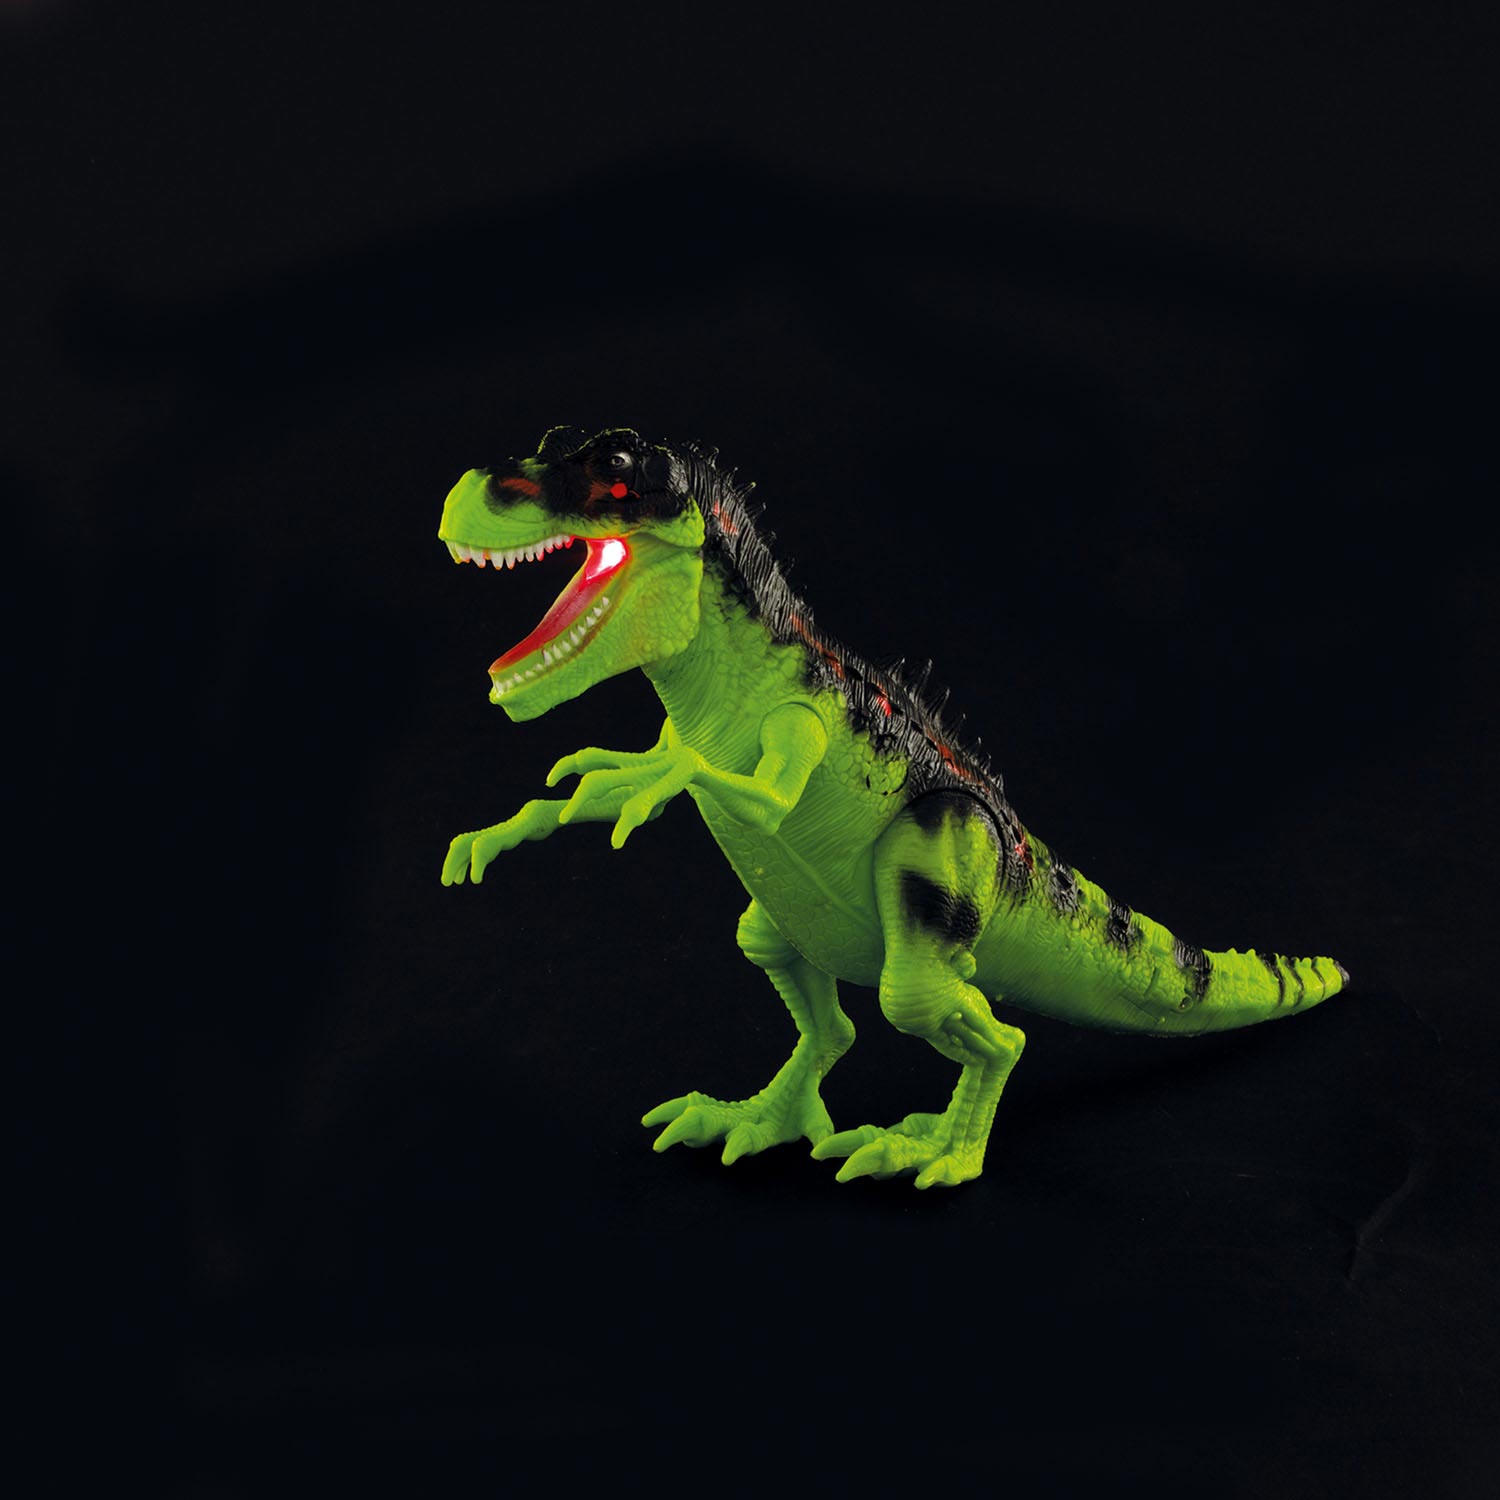 Dino du World of Dinosaurs avec son et vert œuf